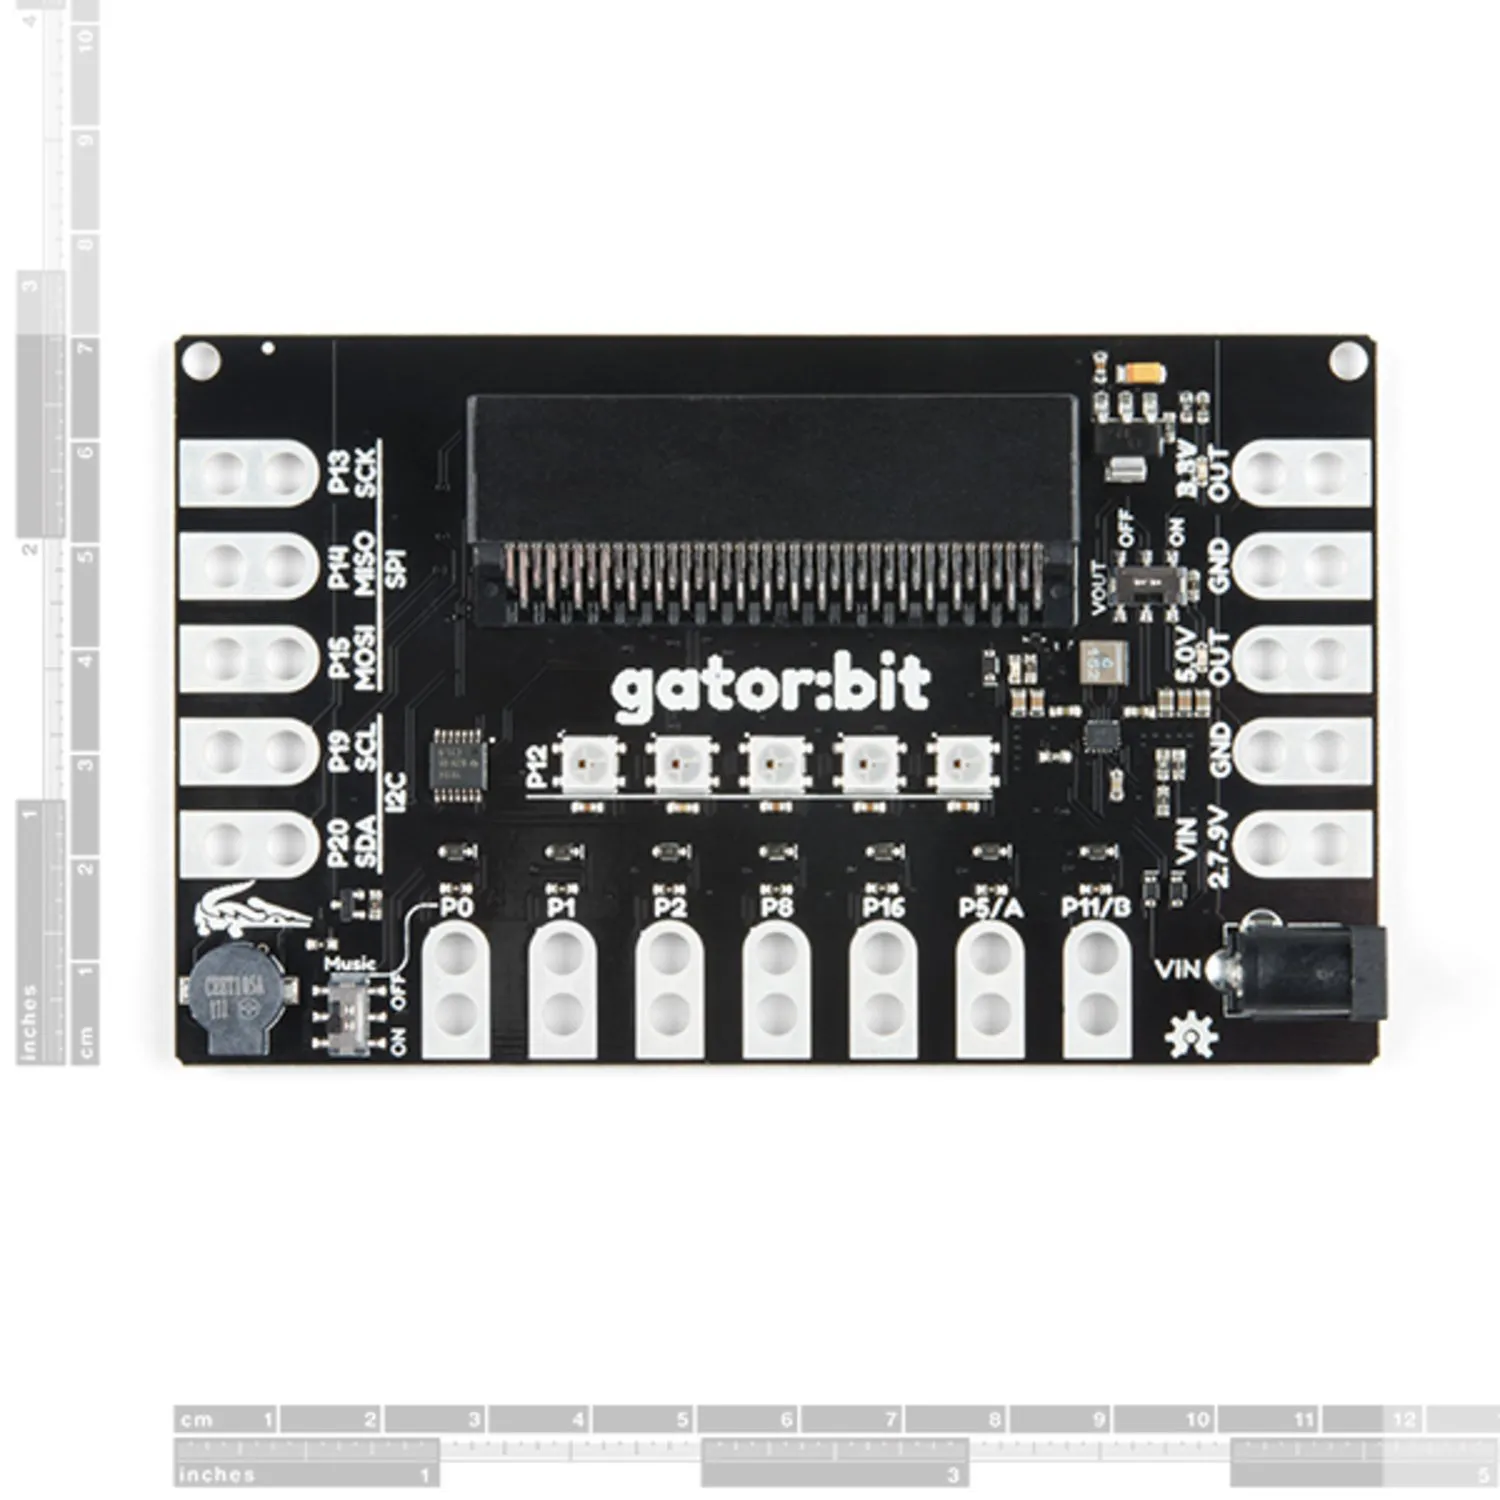 Photo of SparkFun gator:bit v2.0 - micro:bit Carrier Board